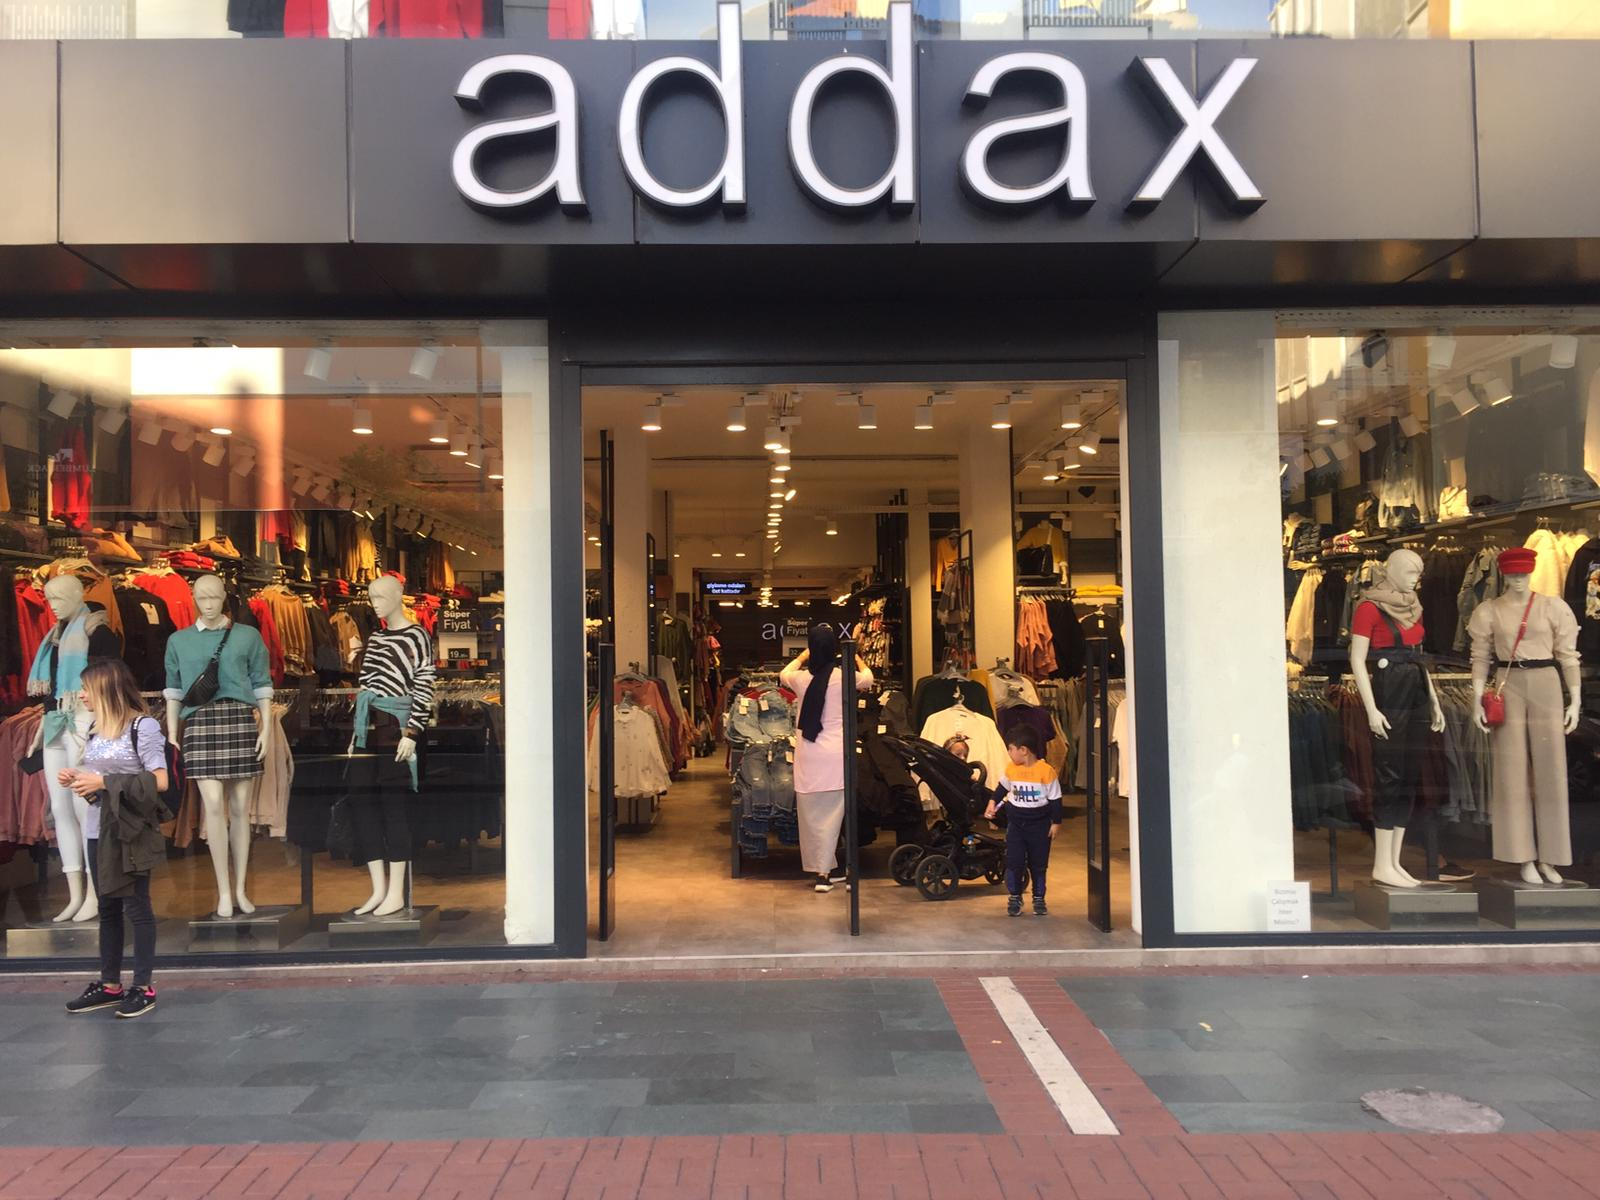 Addax - 5